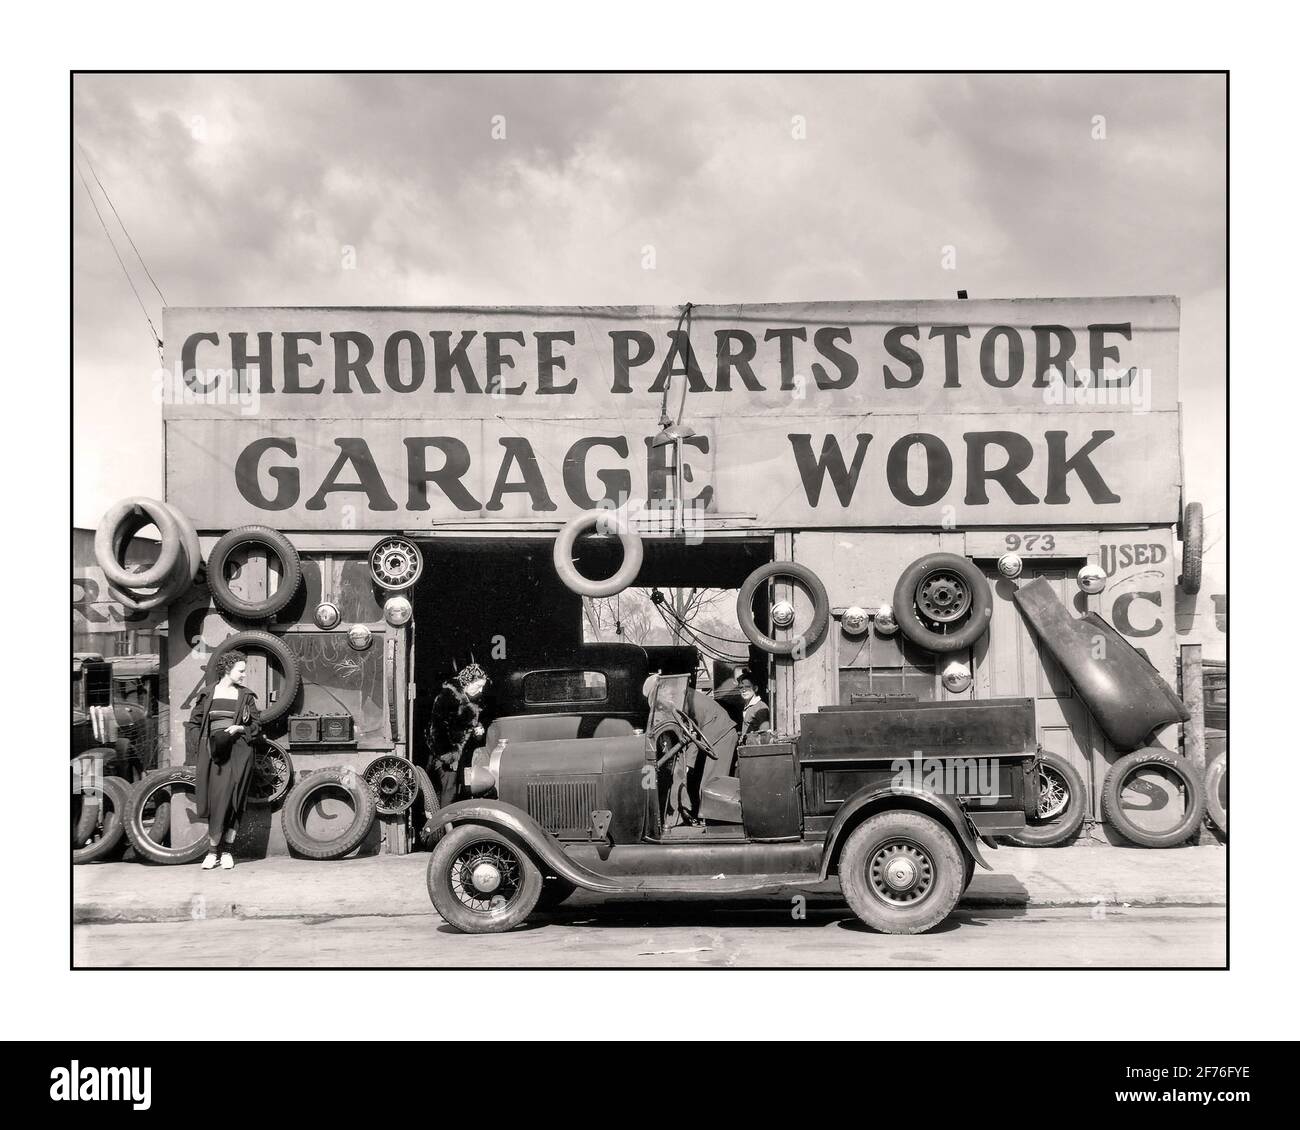 1920 's Auto-Motorwagen Cherokee Parts Store Garage arbeiten Reparatur-Service Anlage mit Ford Model EIN offener Pickup-Truck im Vordergrund USA 1900 Lifestyle Mode nach dem 1. Weltkrieg Arbeit Beschäftigung Stockfoto